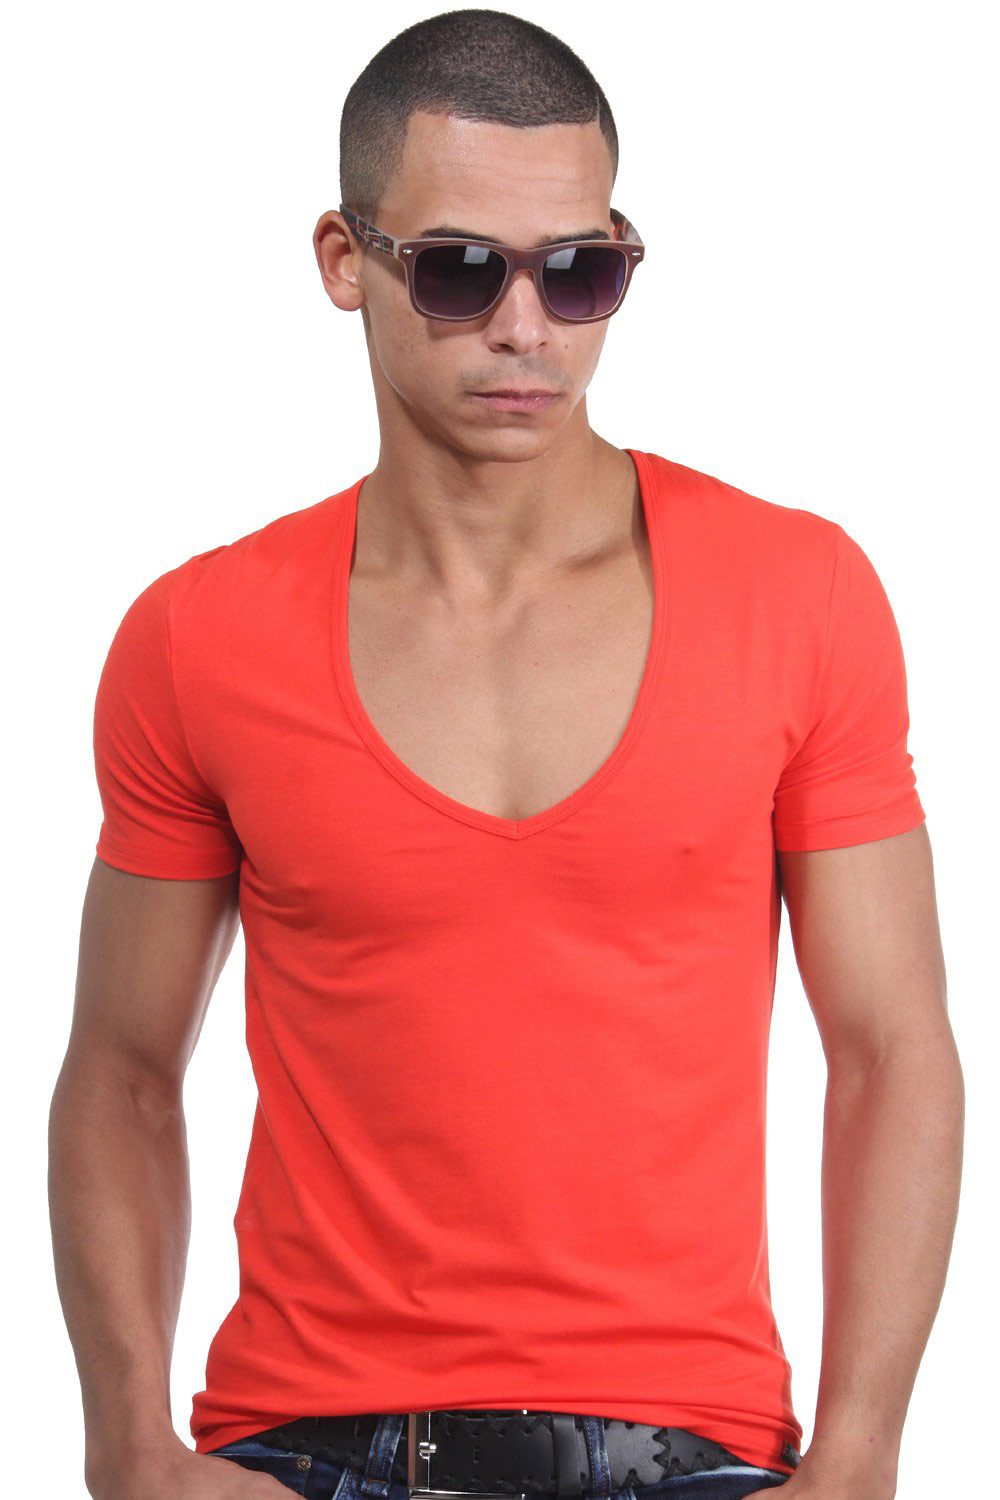 DOREANSE t-shirt v-neck | shop at OBOY.com